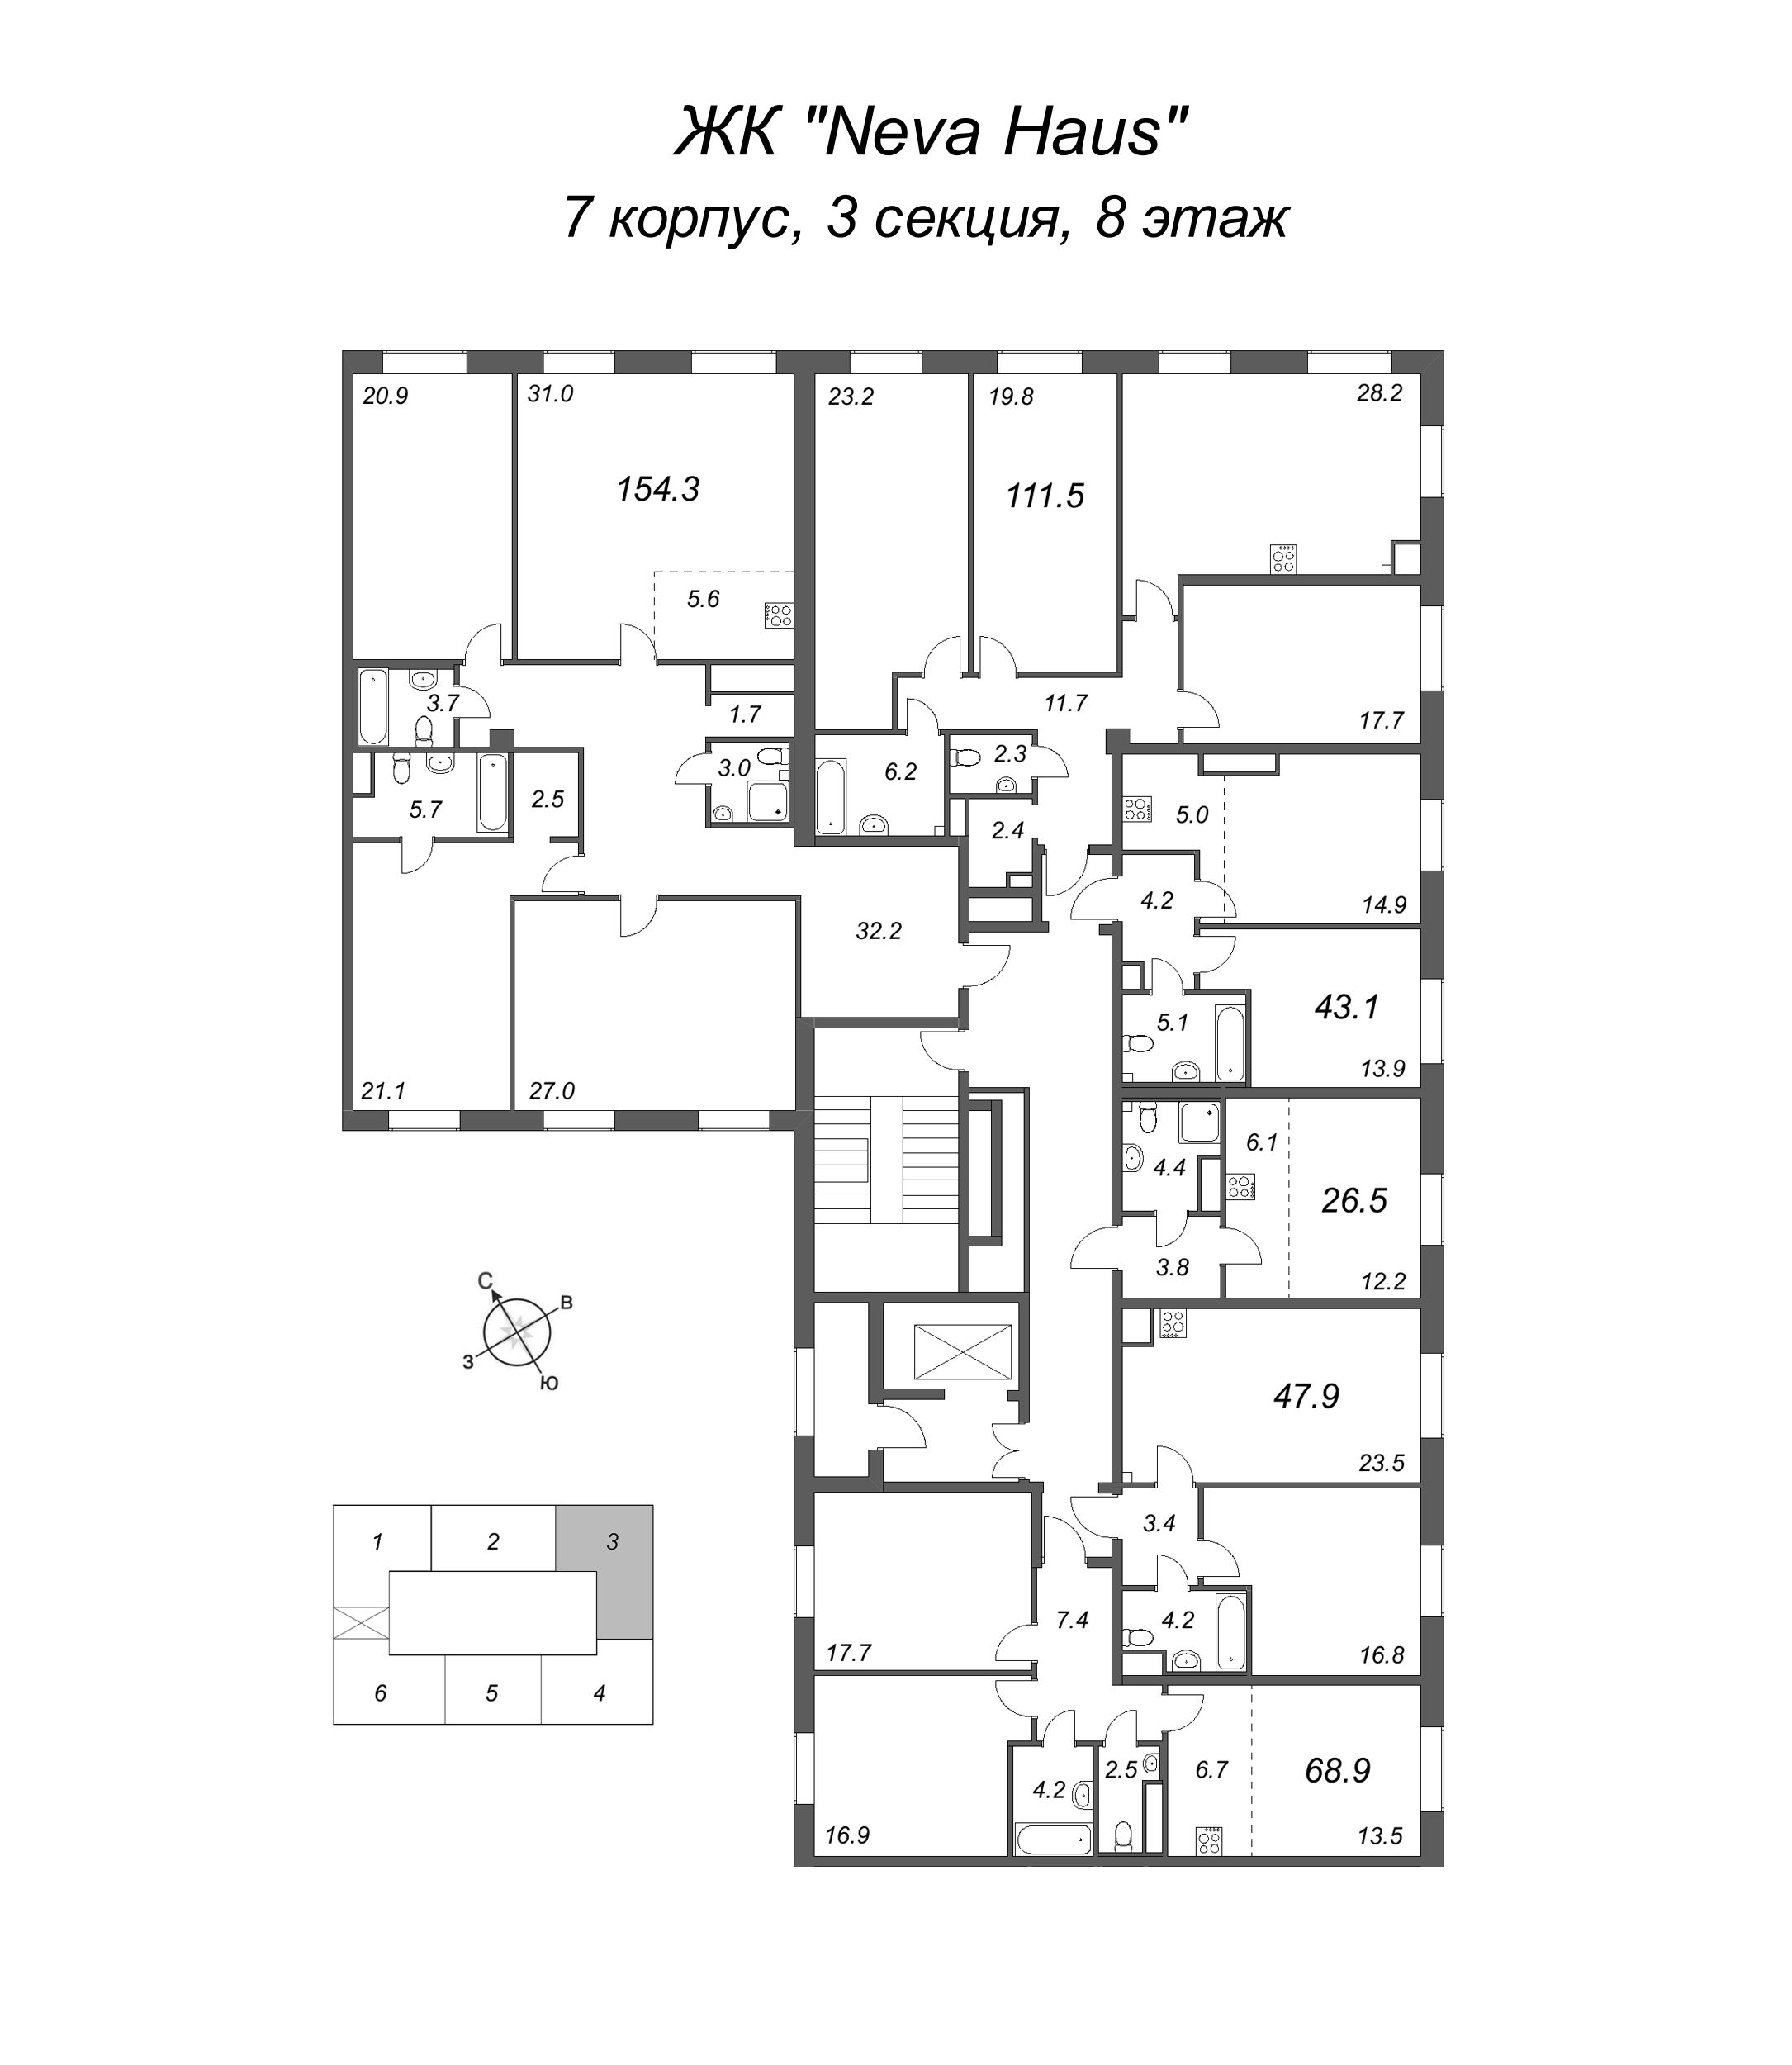 4-комнатная (Евро) квартира, 112.4 м² в ЖК "Neva Haus" - планировка этажа